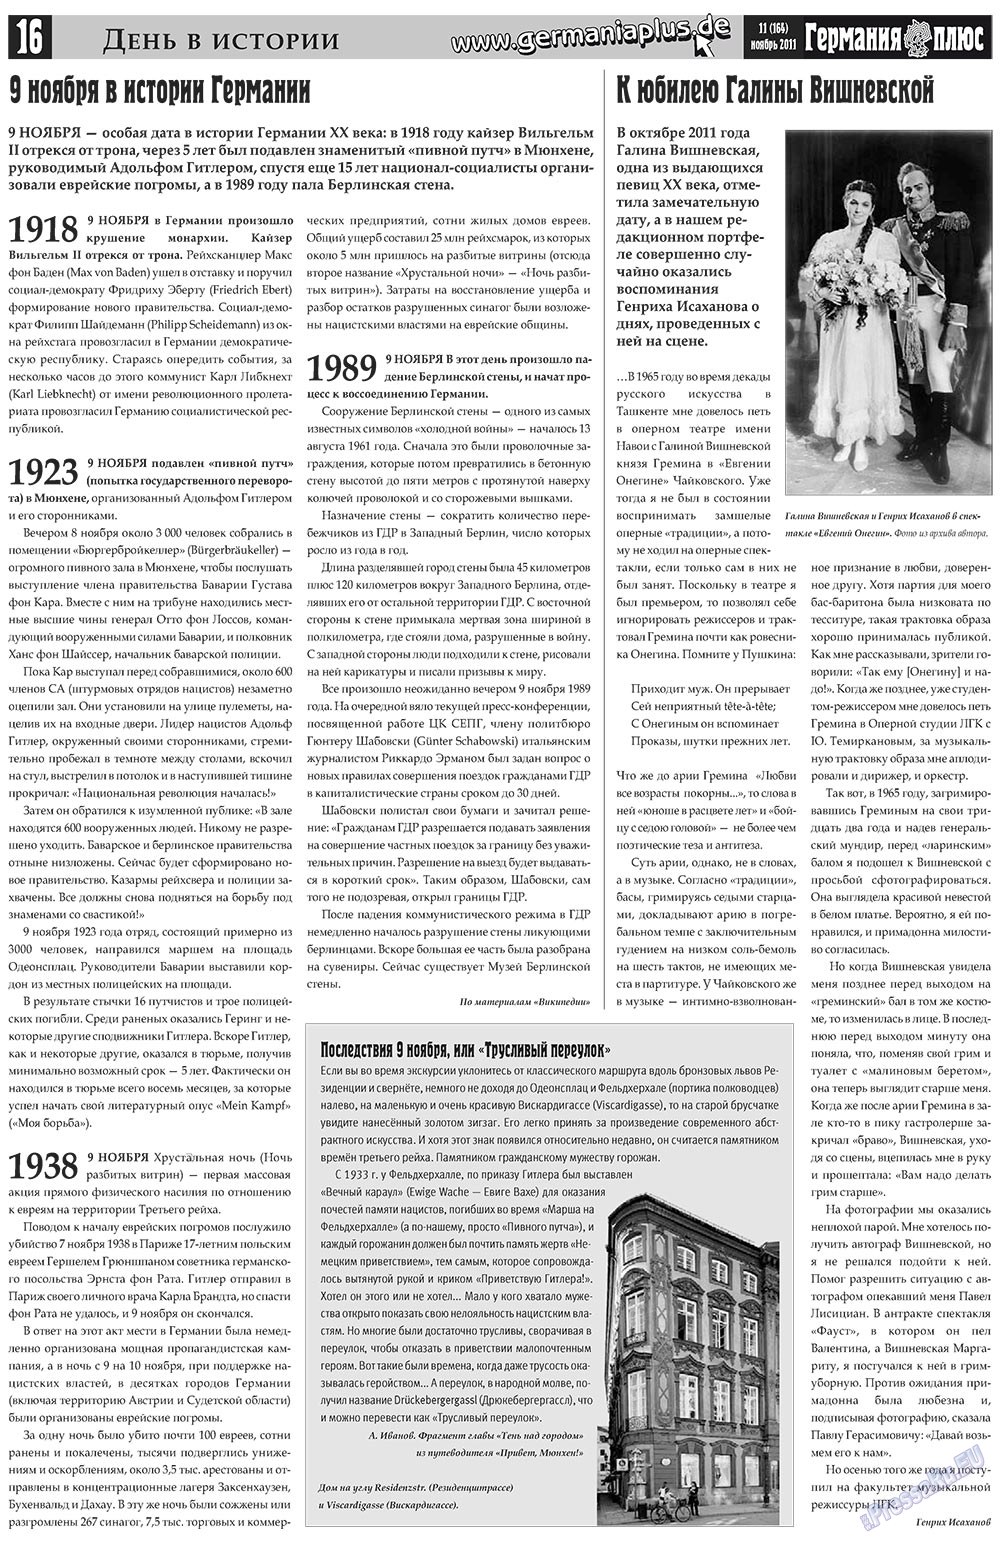 Германия плюс (газета). 2011 год, номер 11, стр. 16